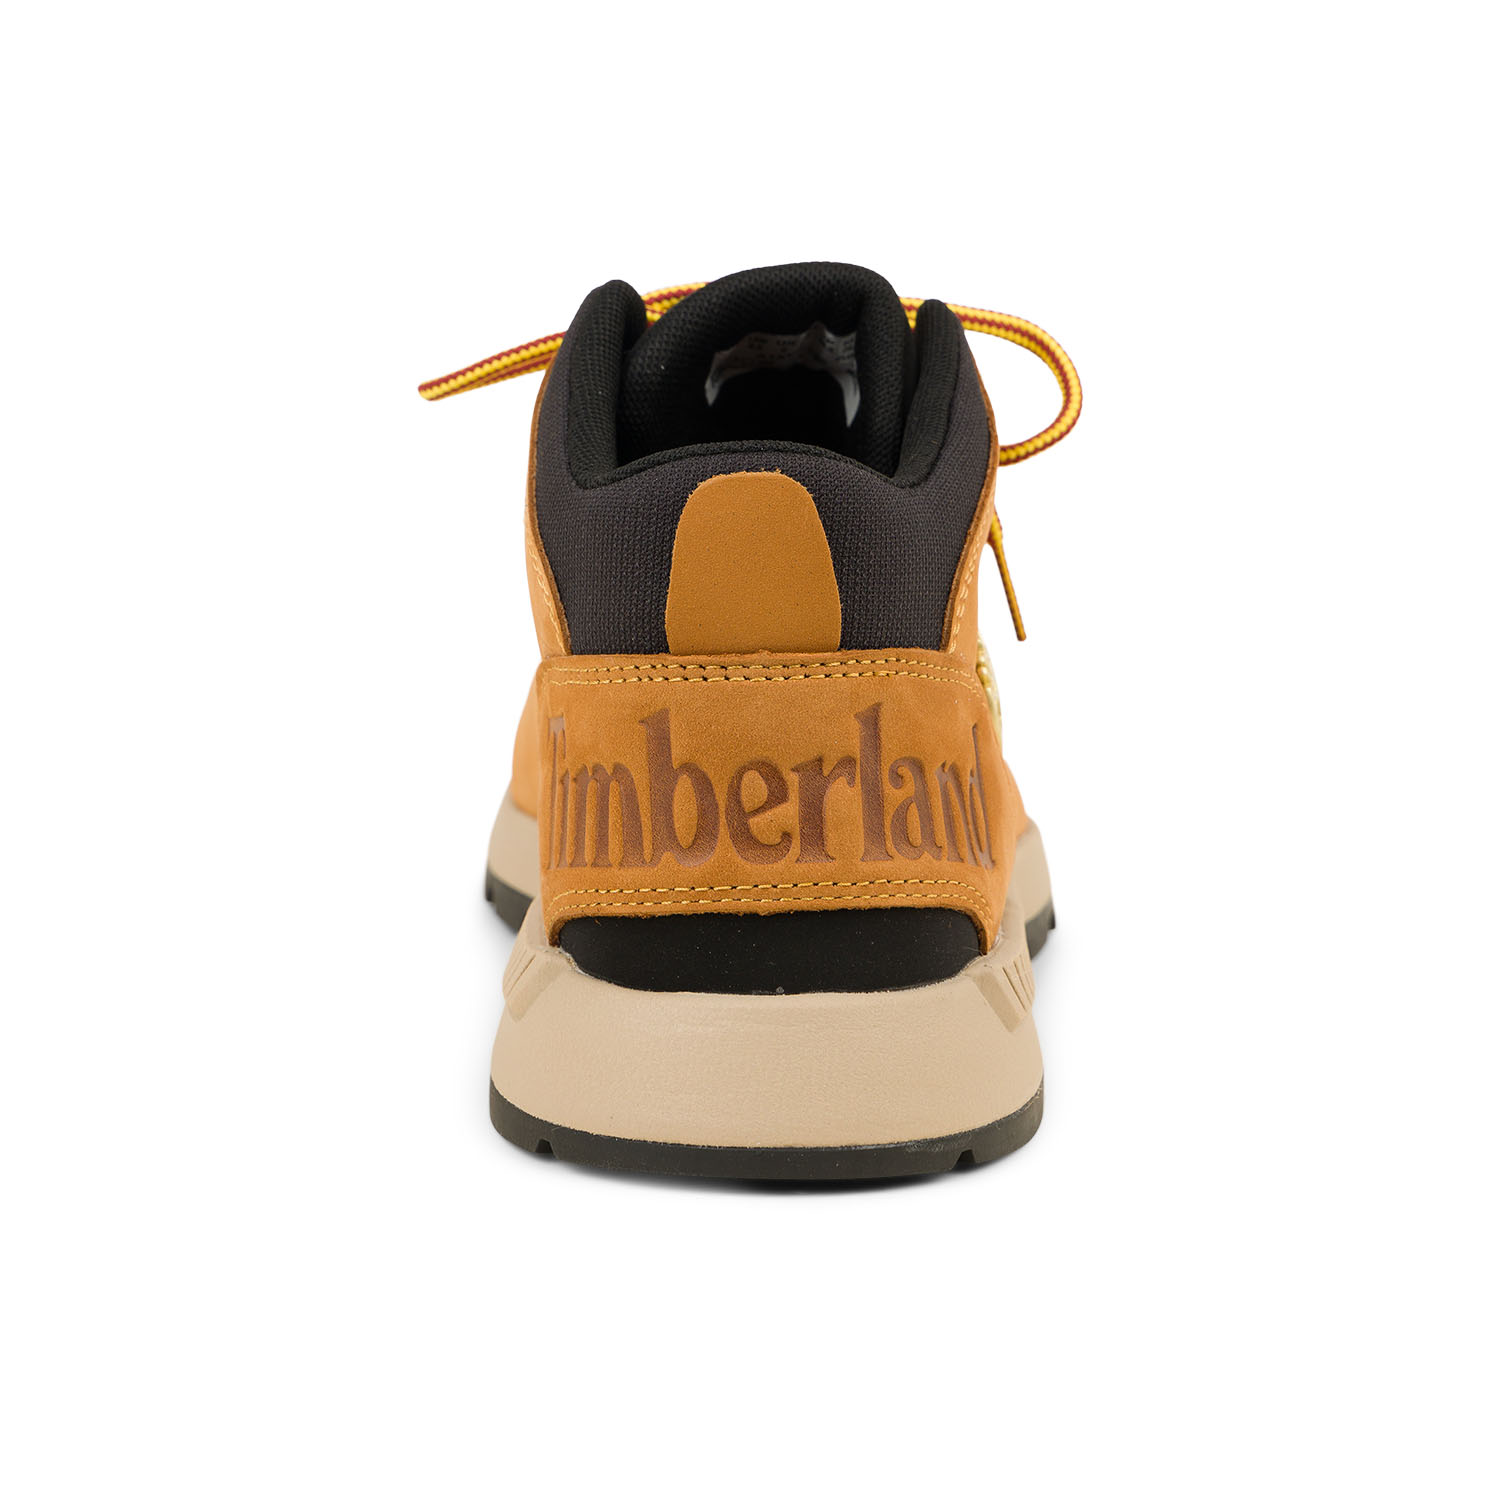 03 - SPRINT TREKKER - TIMBERLAND - Chaussures à lacets - Cuir